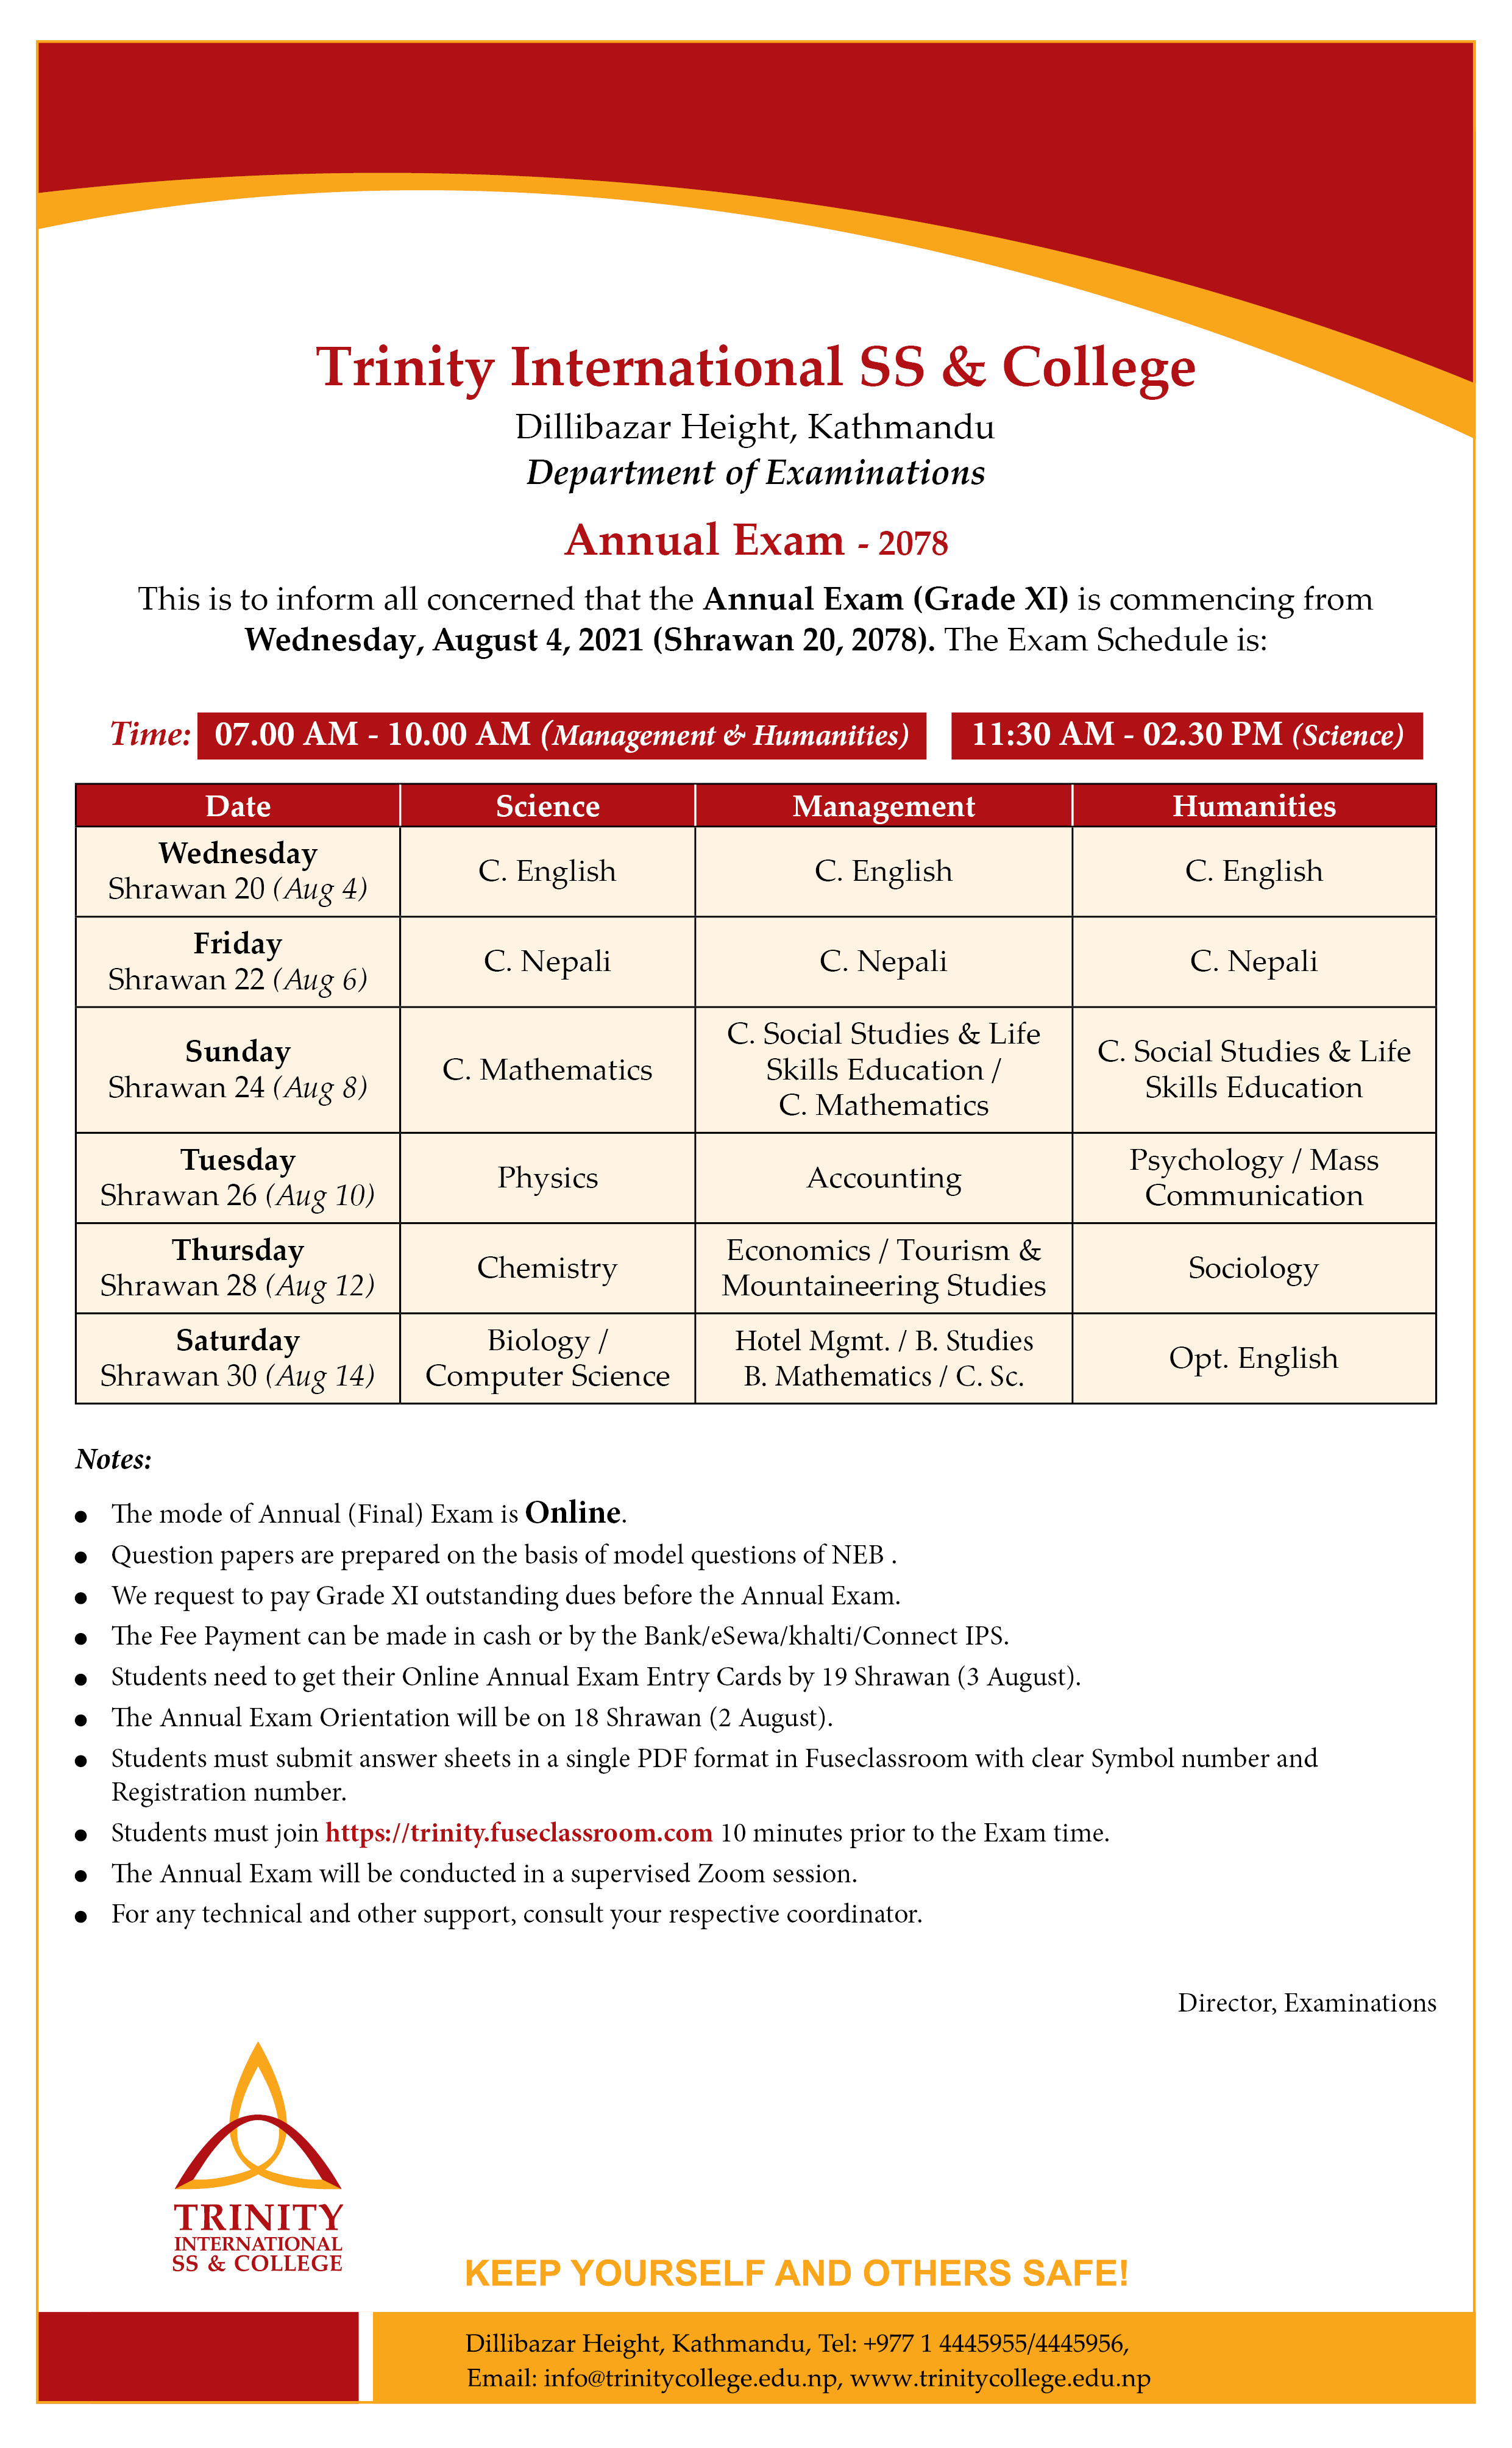 Grade XI Annual Exam Notice